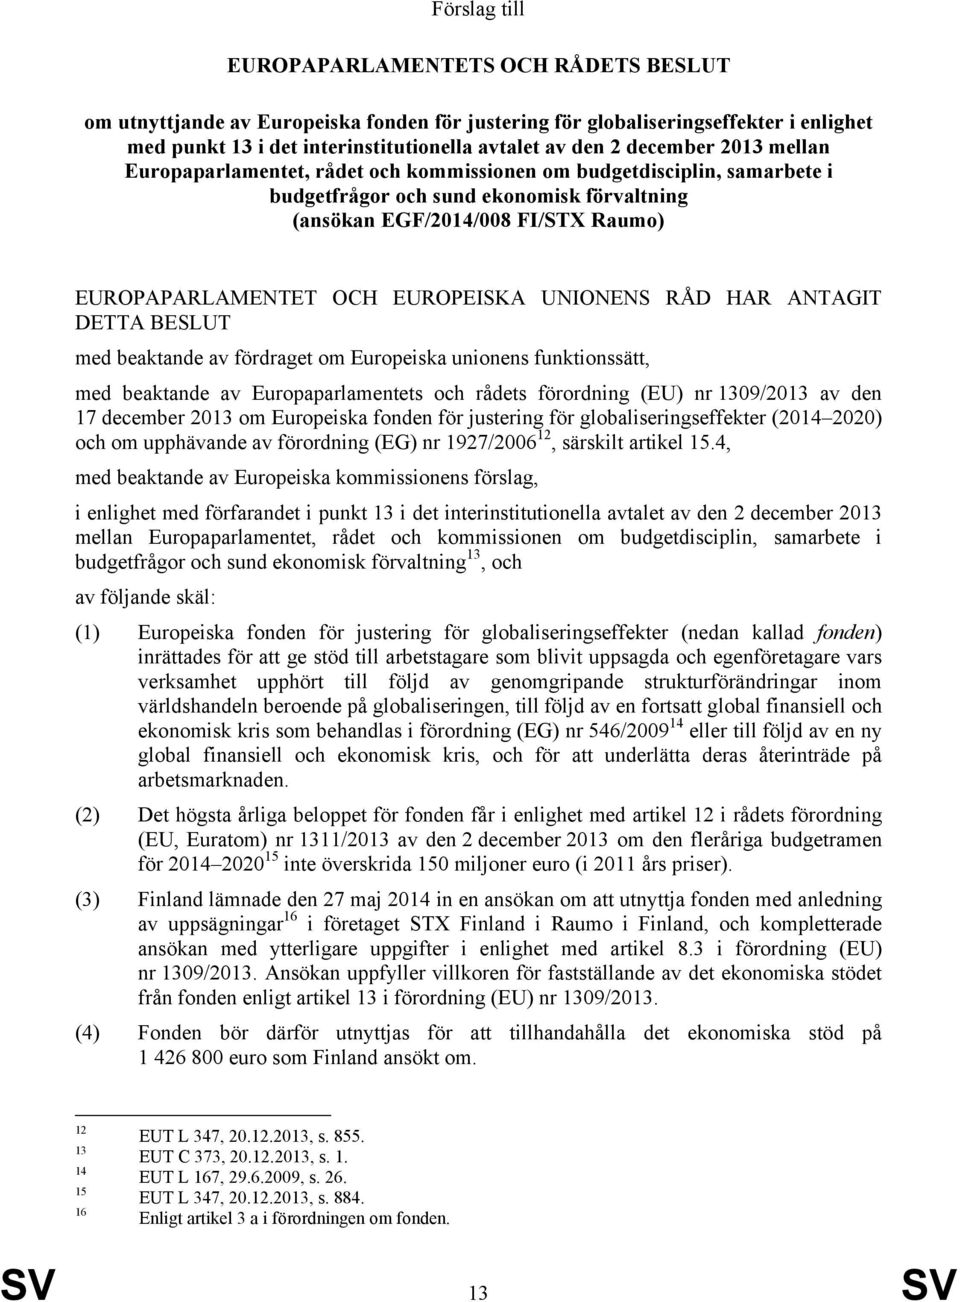 EUROPEISKA UNIONENS RÅD HAR ANTAGIT DETTA BESLUT med beaktande av fördraget om Europeiska unionens funktionssätt, med beaktande av Europaparlamentets och rådets förordning (EU) nr 1309/2013 av den 17